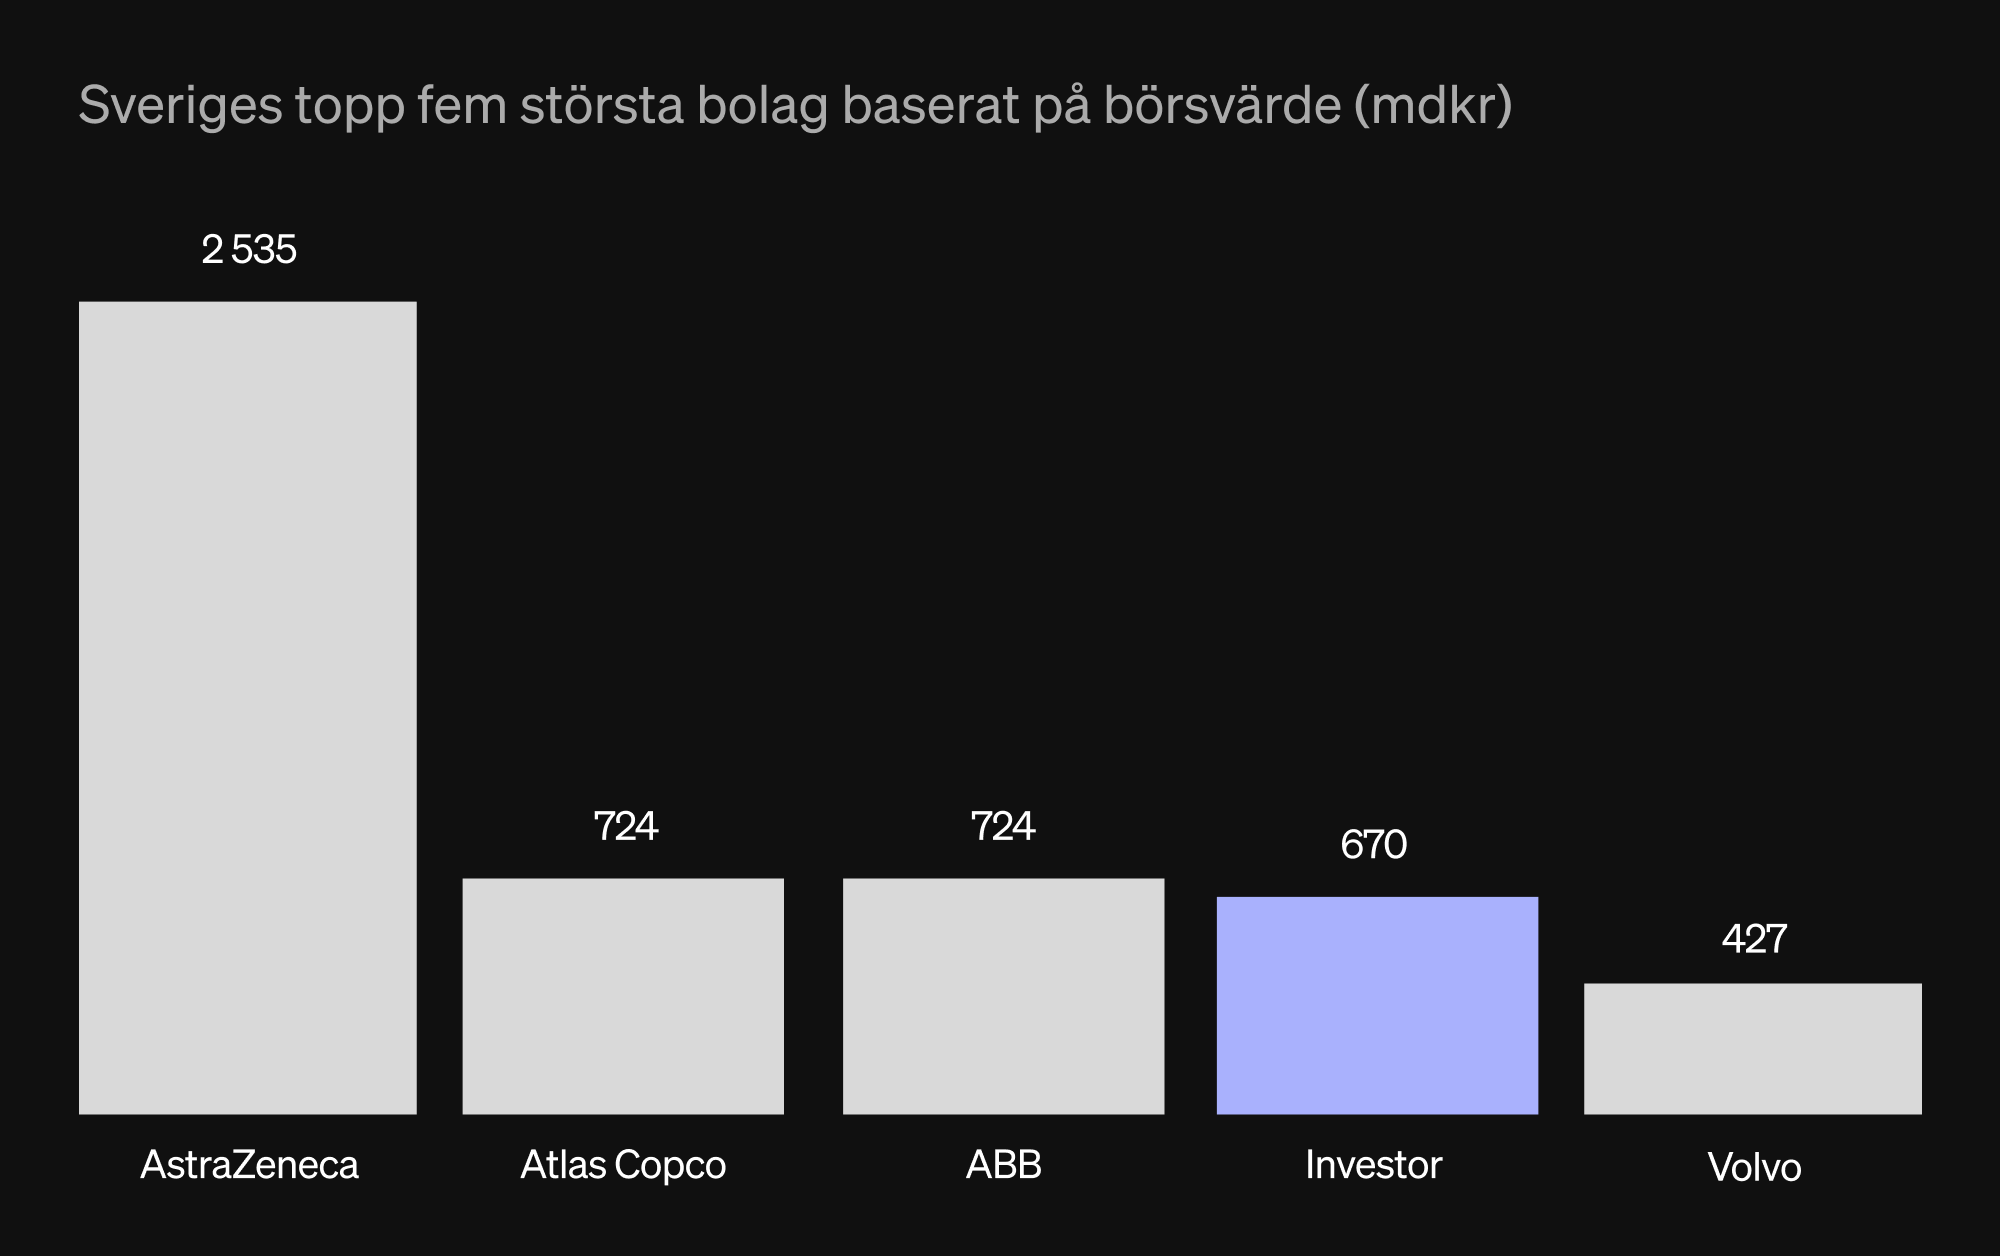 Sveriges topp fem största bolag baserat på börsvärde (mdkr) 